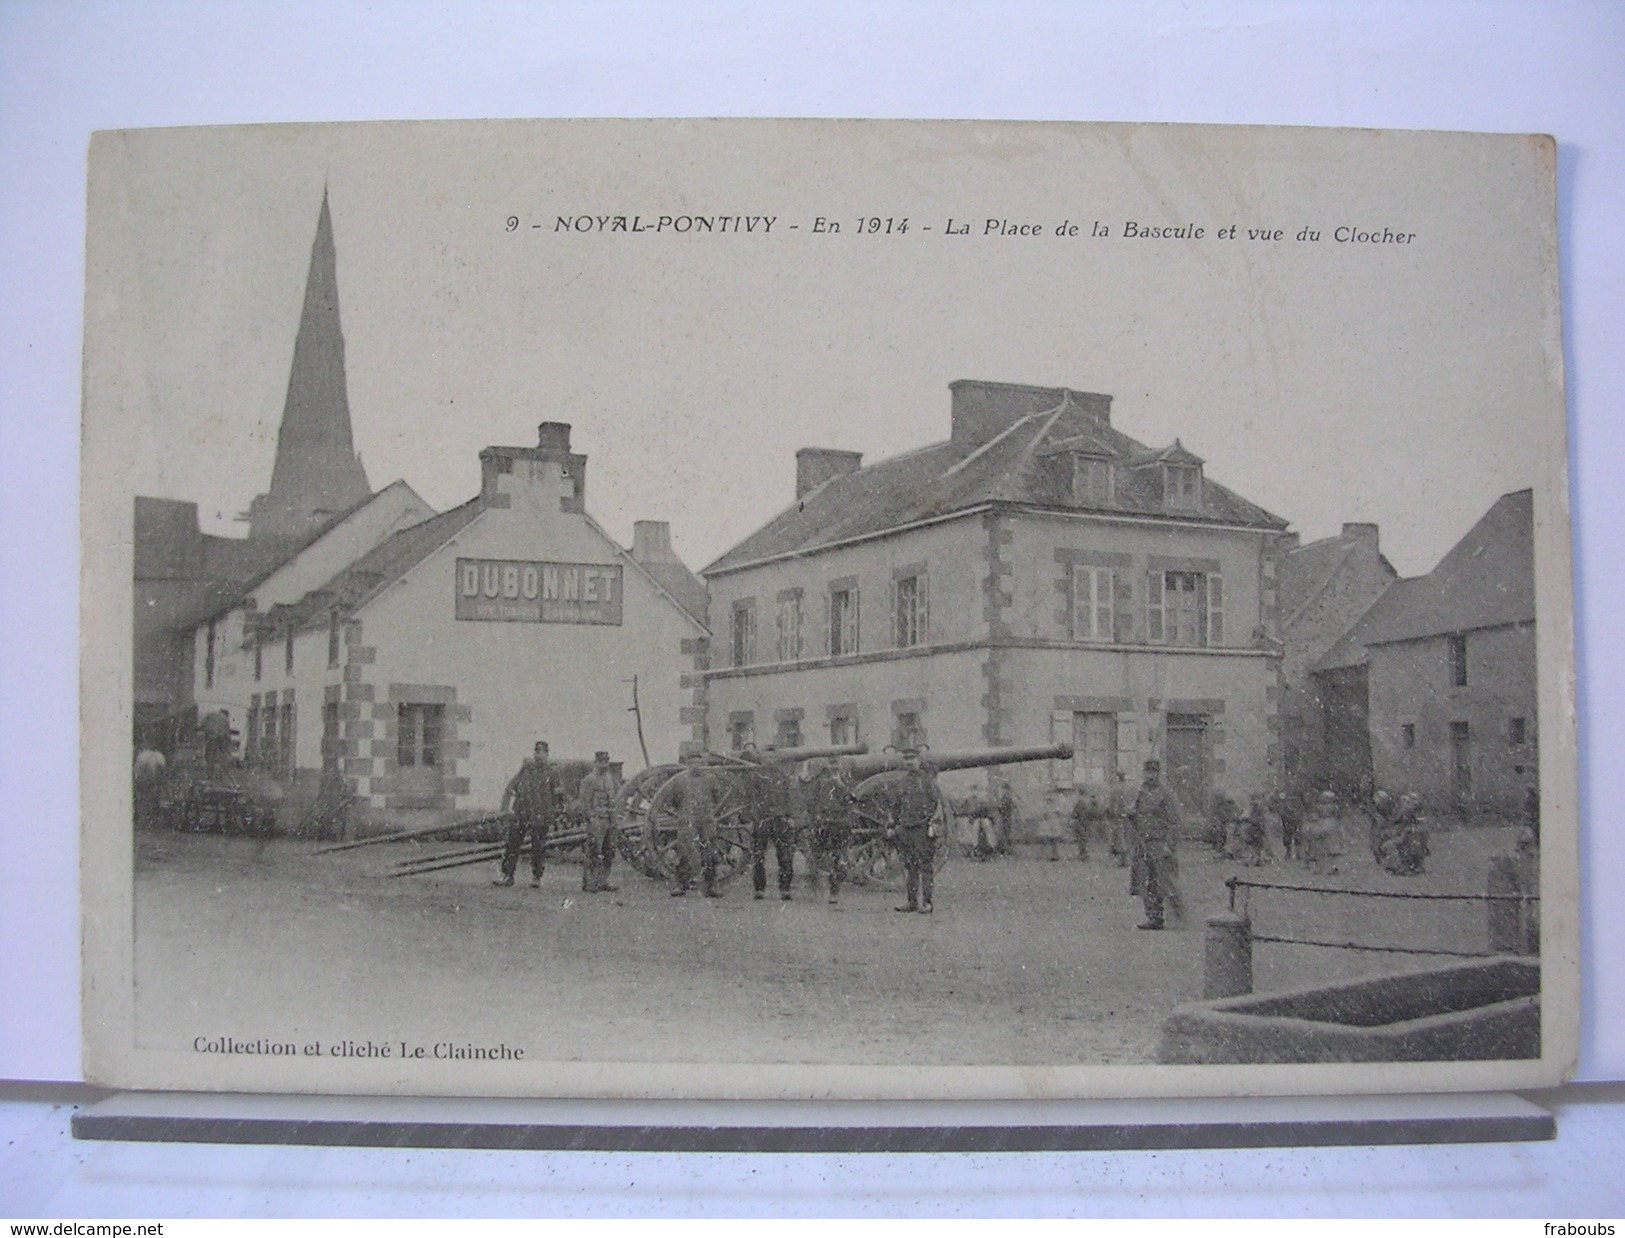 56 - NOYAL PONTIVY - EN 1914 - LA PLACE DE LA BASCULE ET VUE DU CLOCHER - ANIMEE - SOLDATS - CANONS - Pontivy